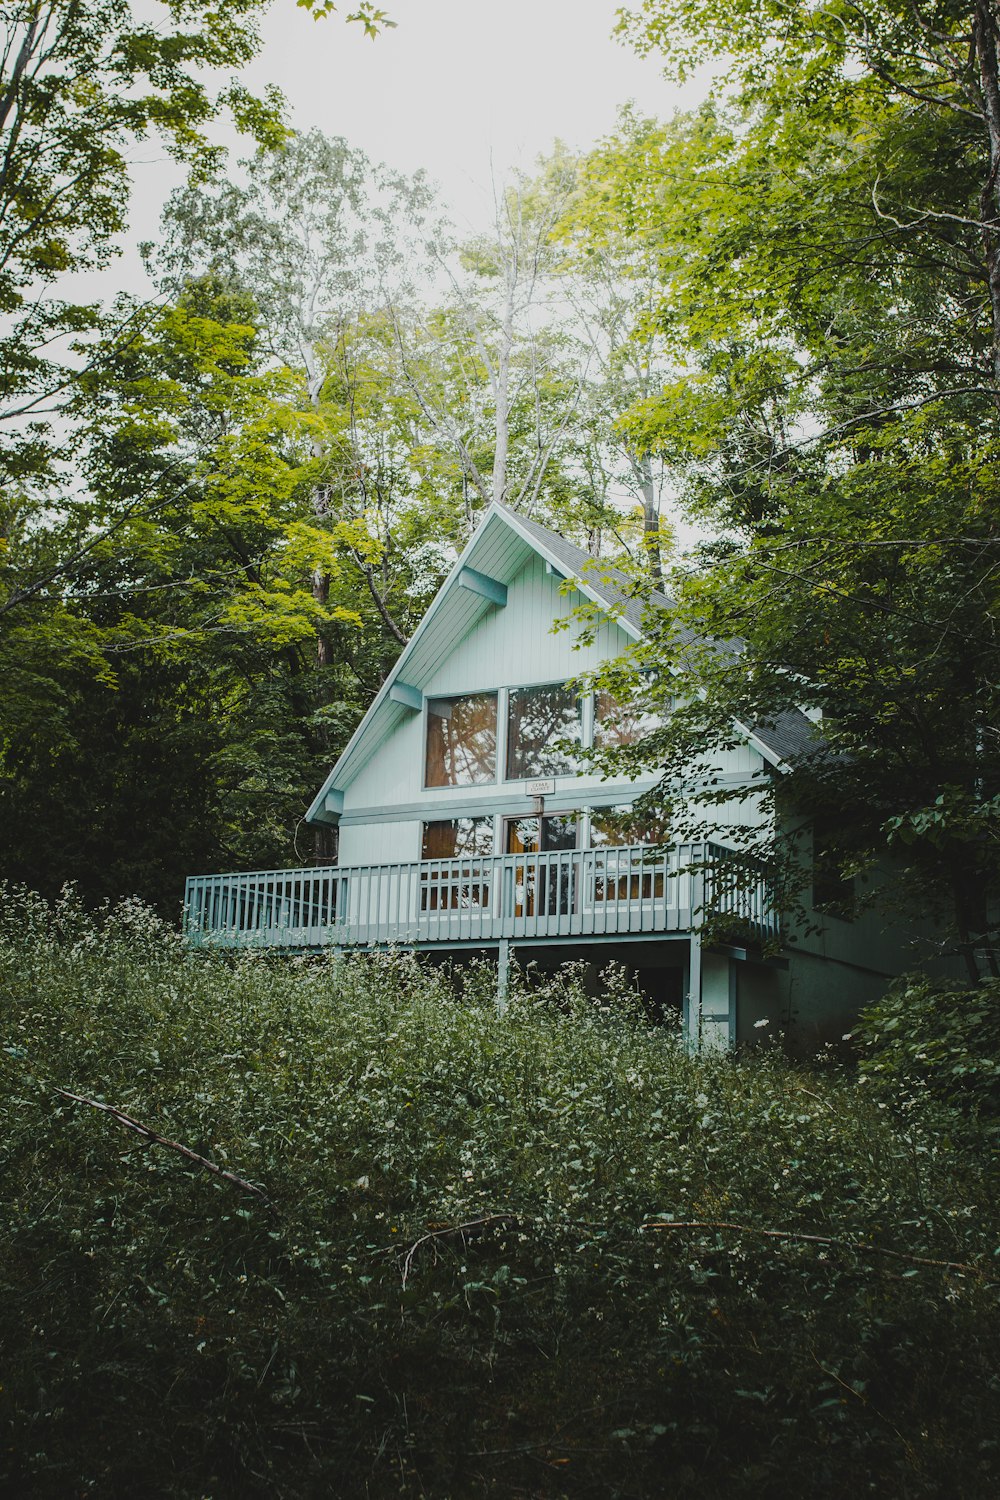 casa di legno bianca circondata da alberi verdi durante il giorno